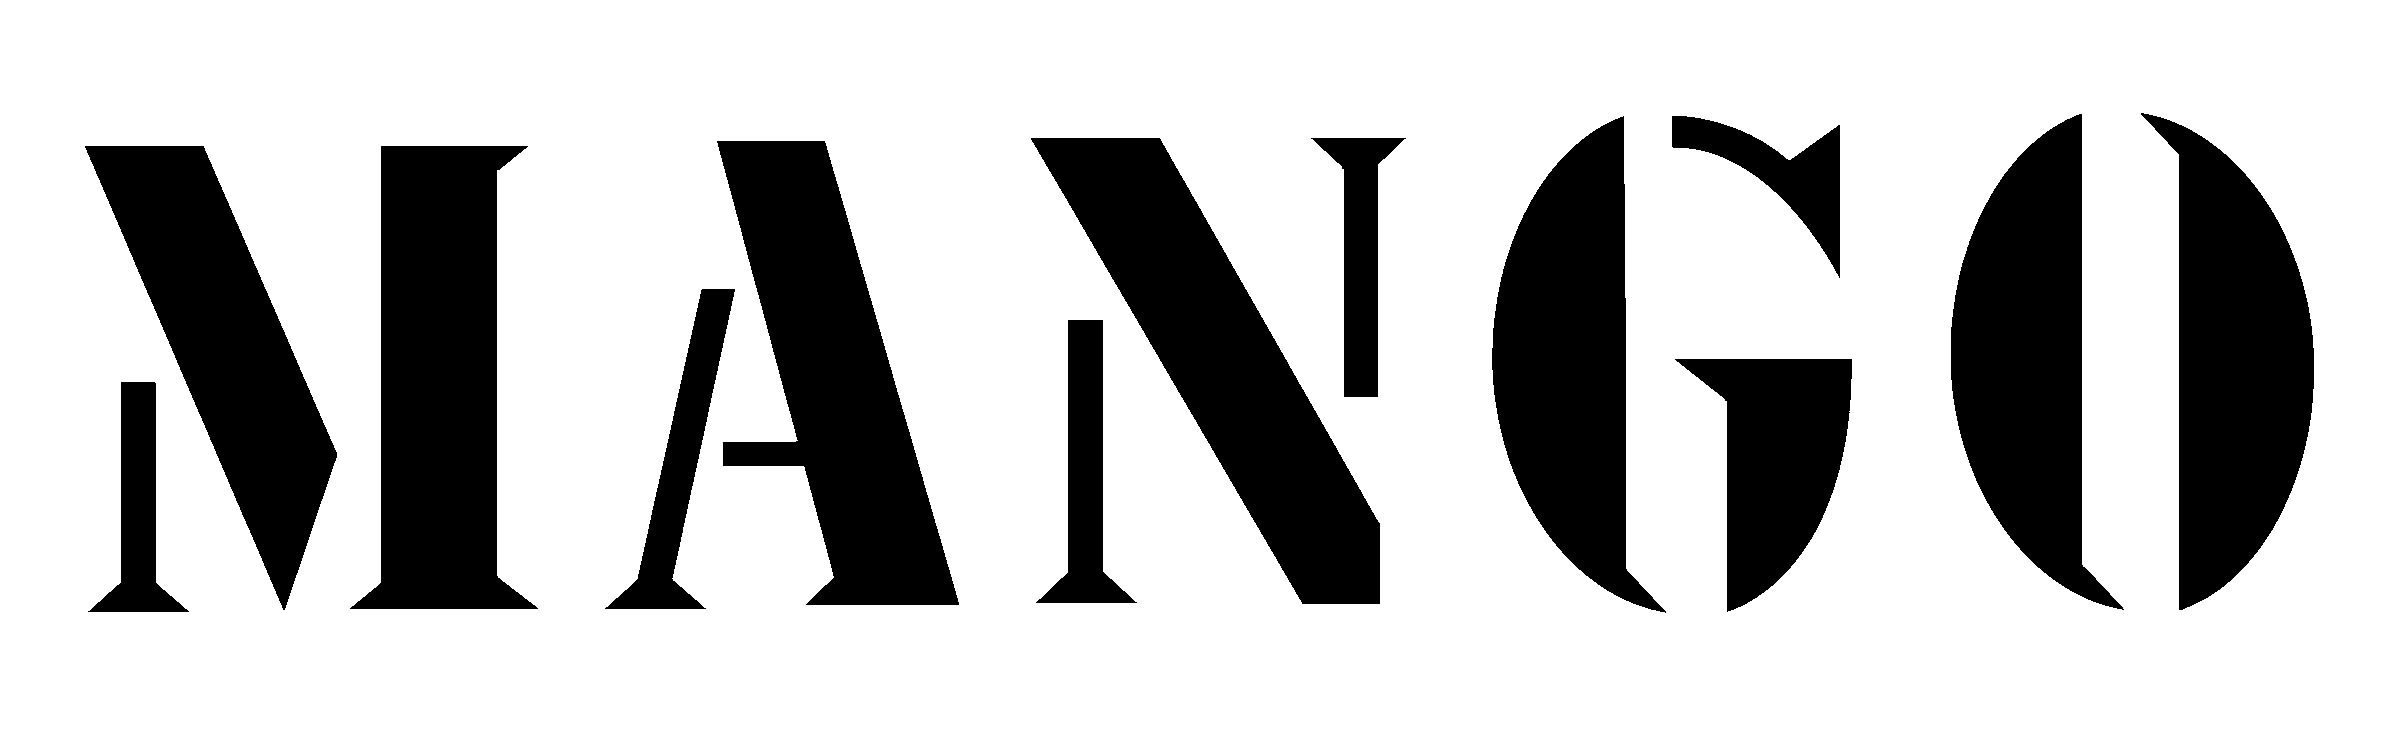 Nouveau logo pour la chaîne de mode espagnol MANGO - CREADS